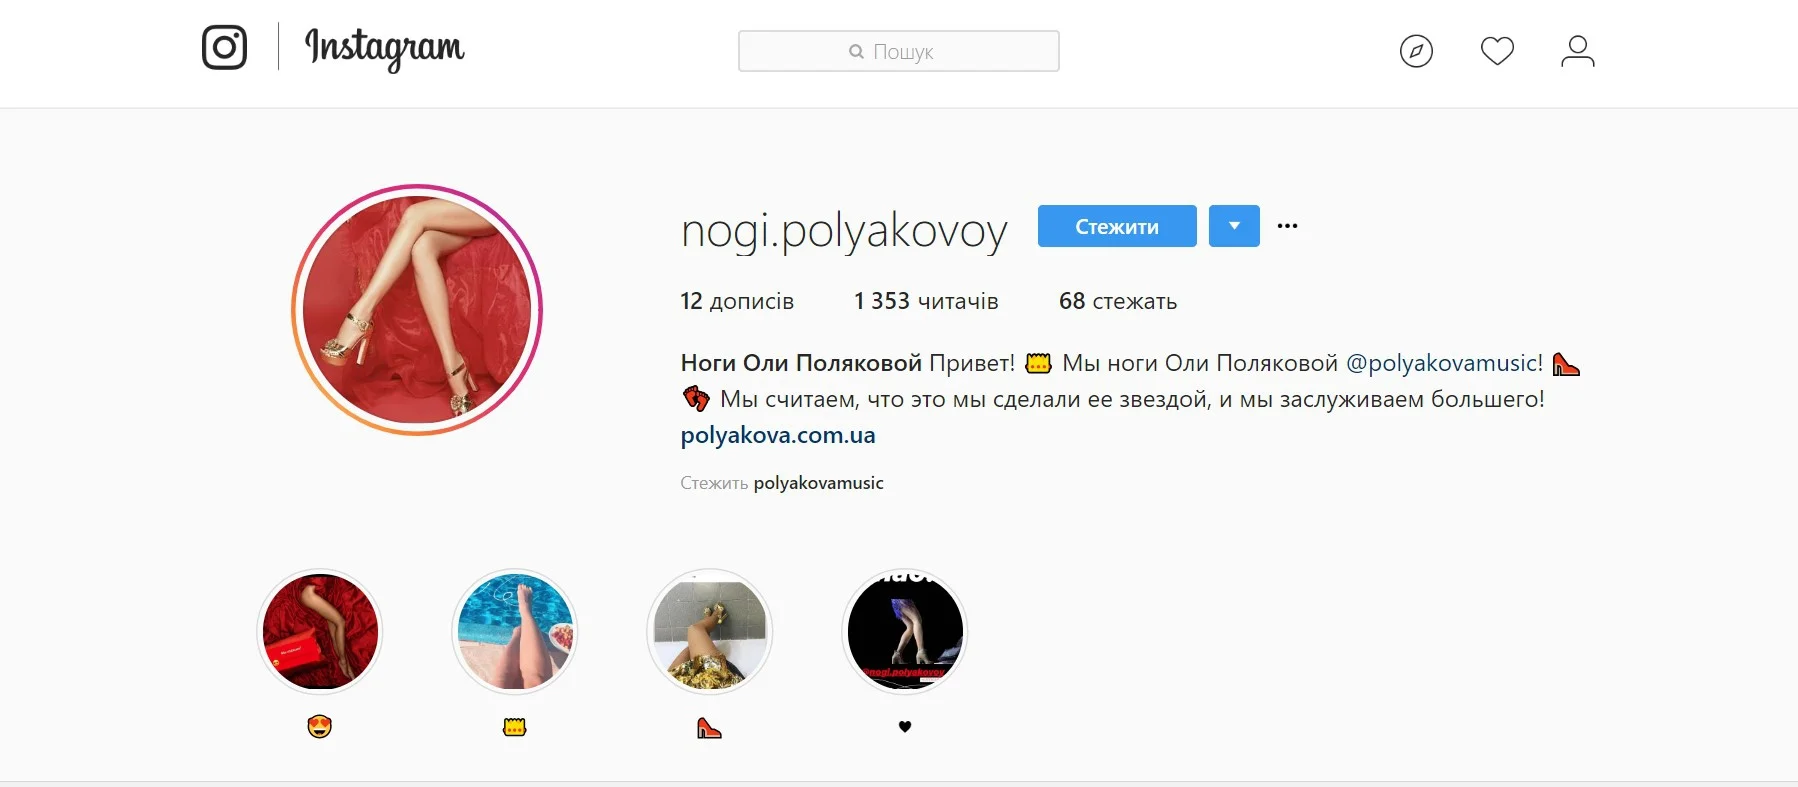 Сенсация дня: у ног Оли Поляковой появился личный Instagram - фото 390860